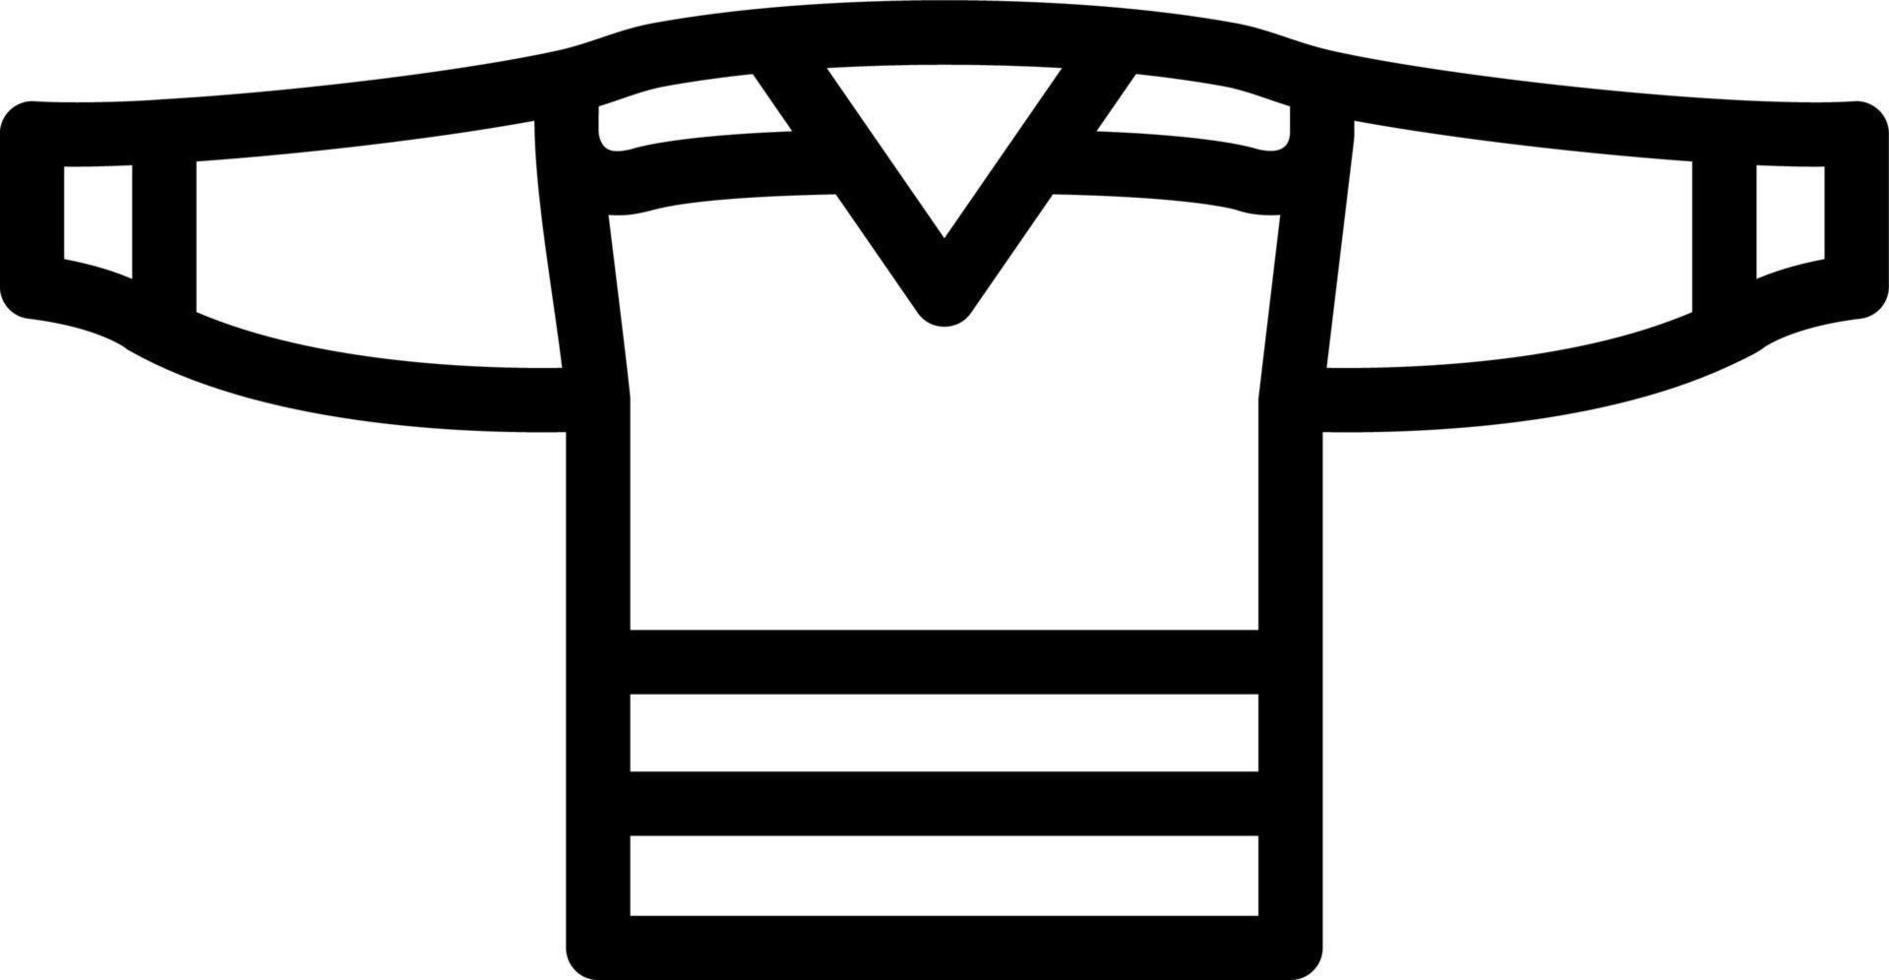 conception d'icône vectorielle de maillot de hockey vecteur